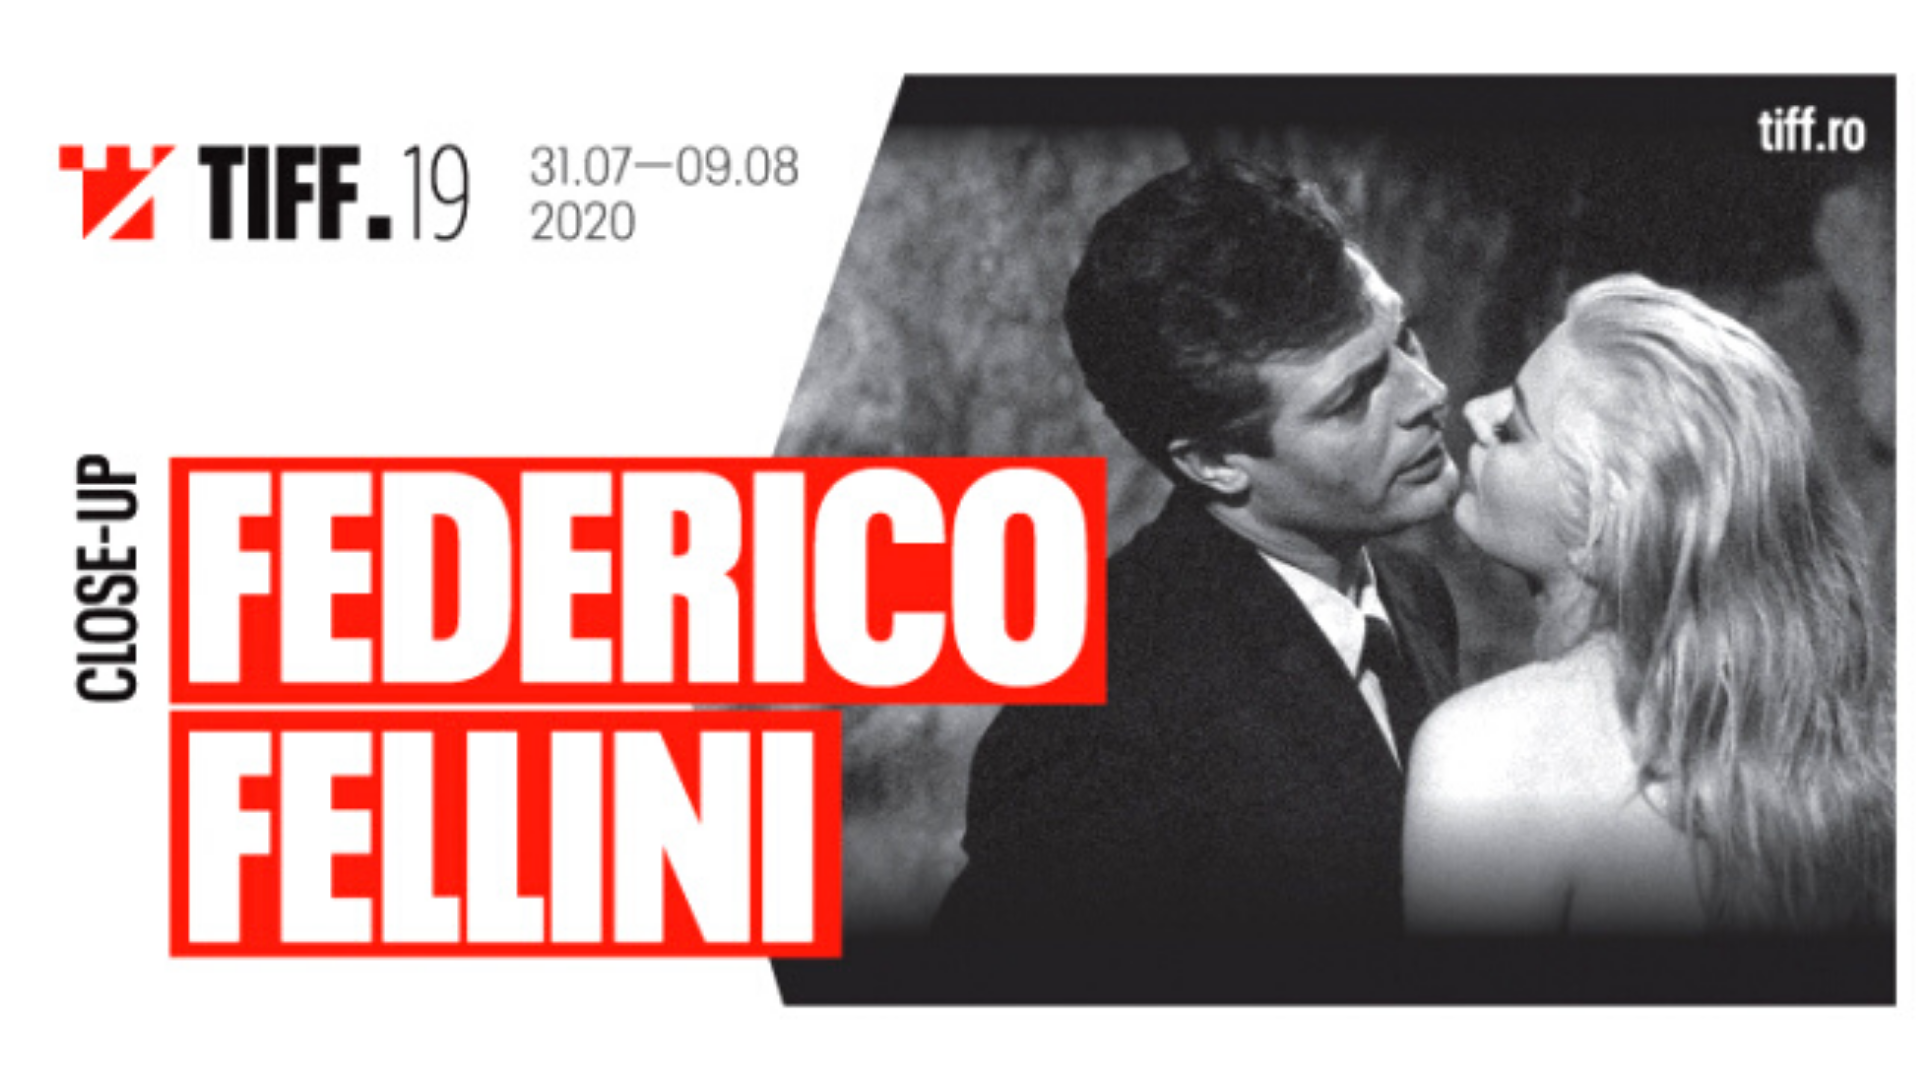 Close-up Federico Fellini at Transilvania IFF 2020